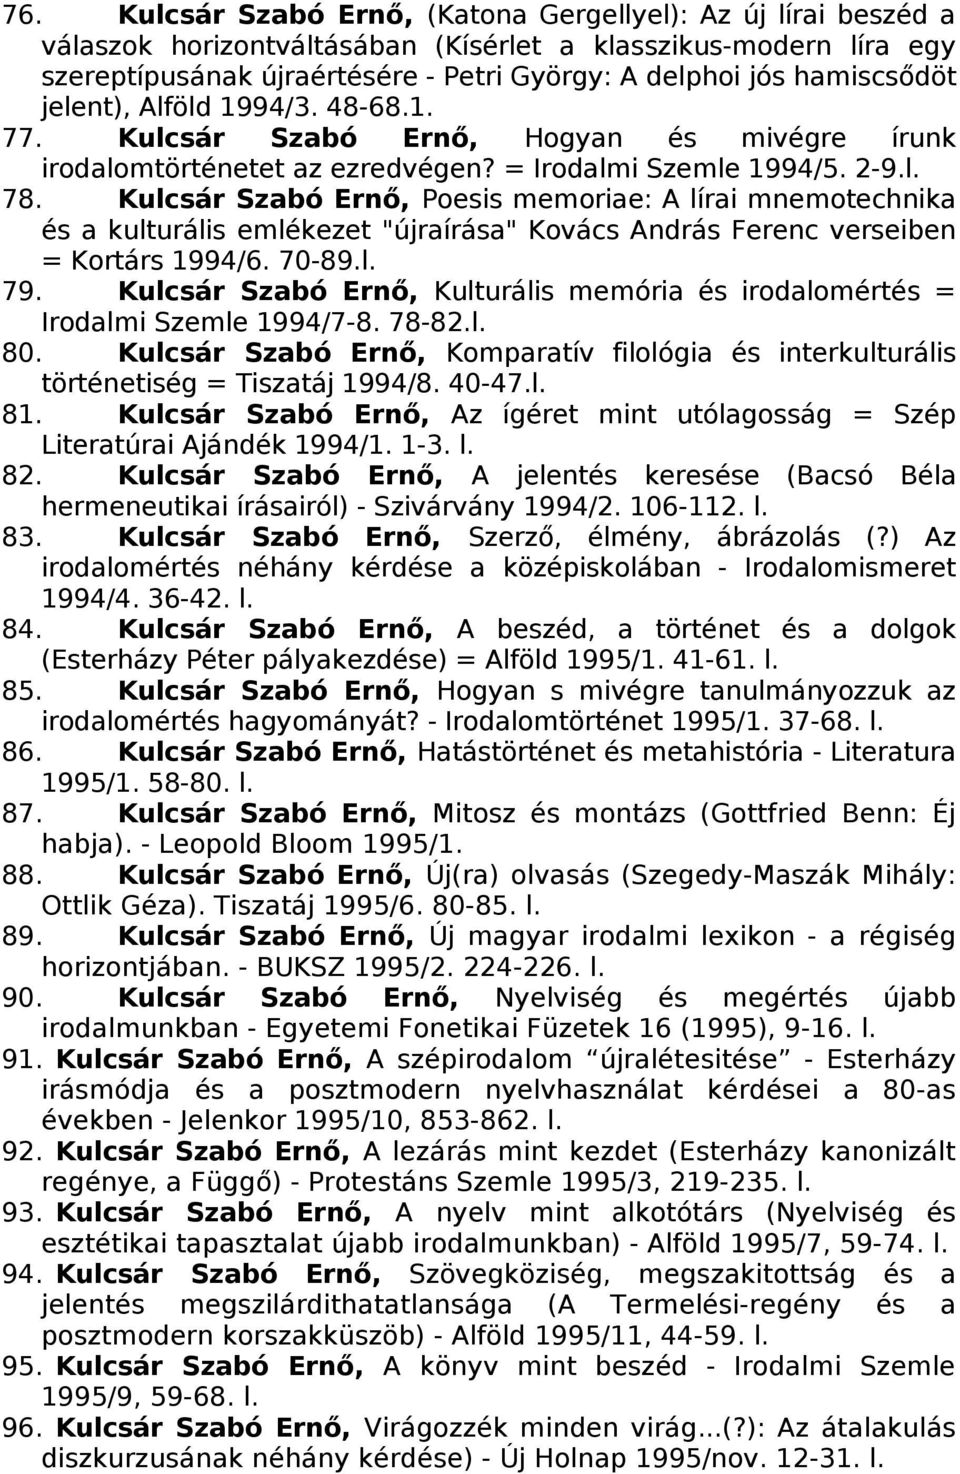 Kulcsár Szabó Ernő, Poesis memoriae: A lírai mnemotechnika és a kulturális emlékezet "újraírása" Kovács András Ferenc verseiben = Kortárs 1994/6. 70-89.l. 79.